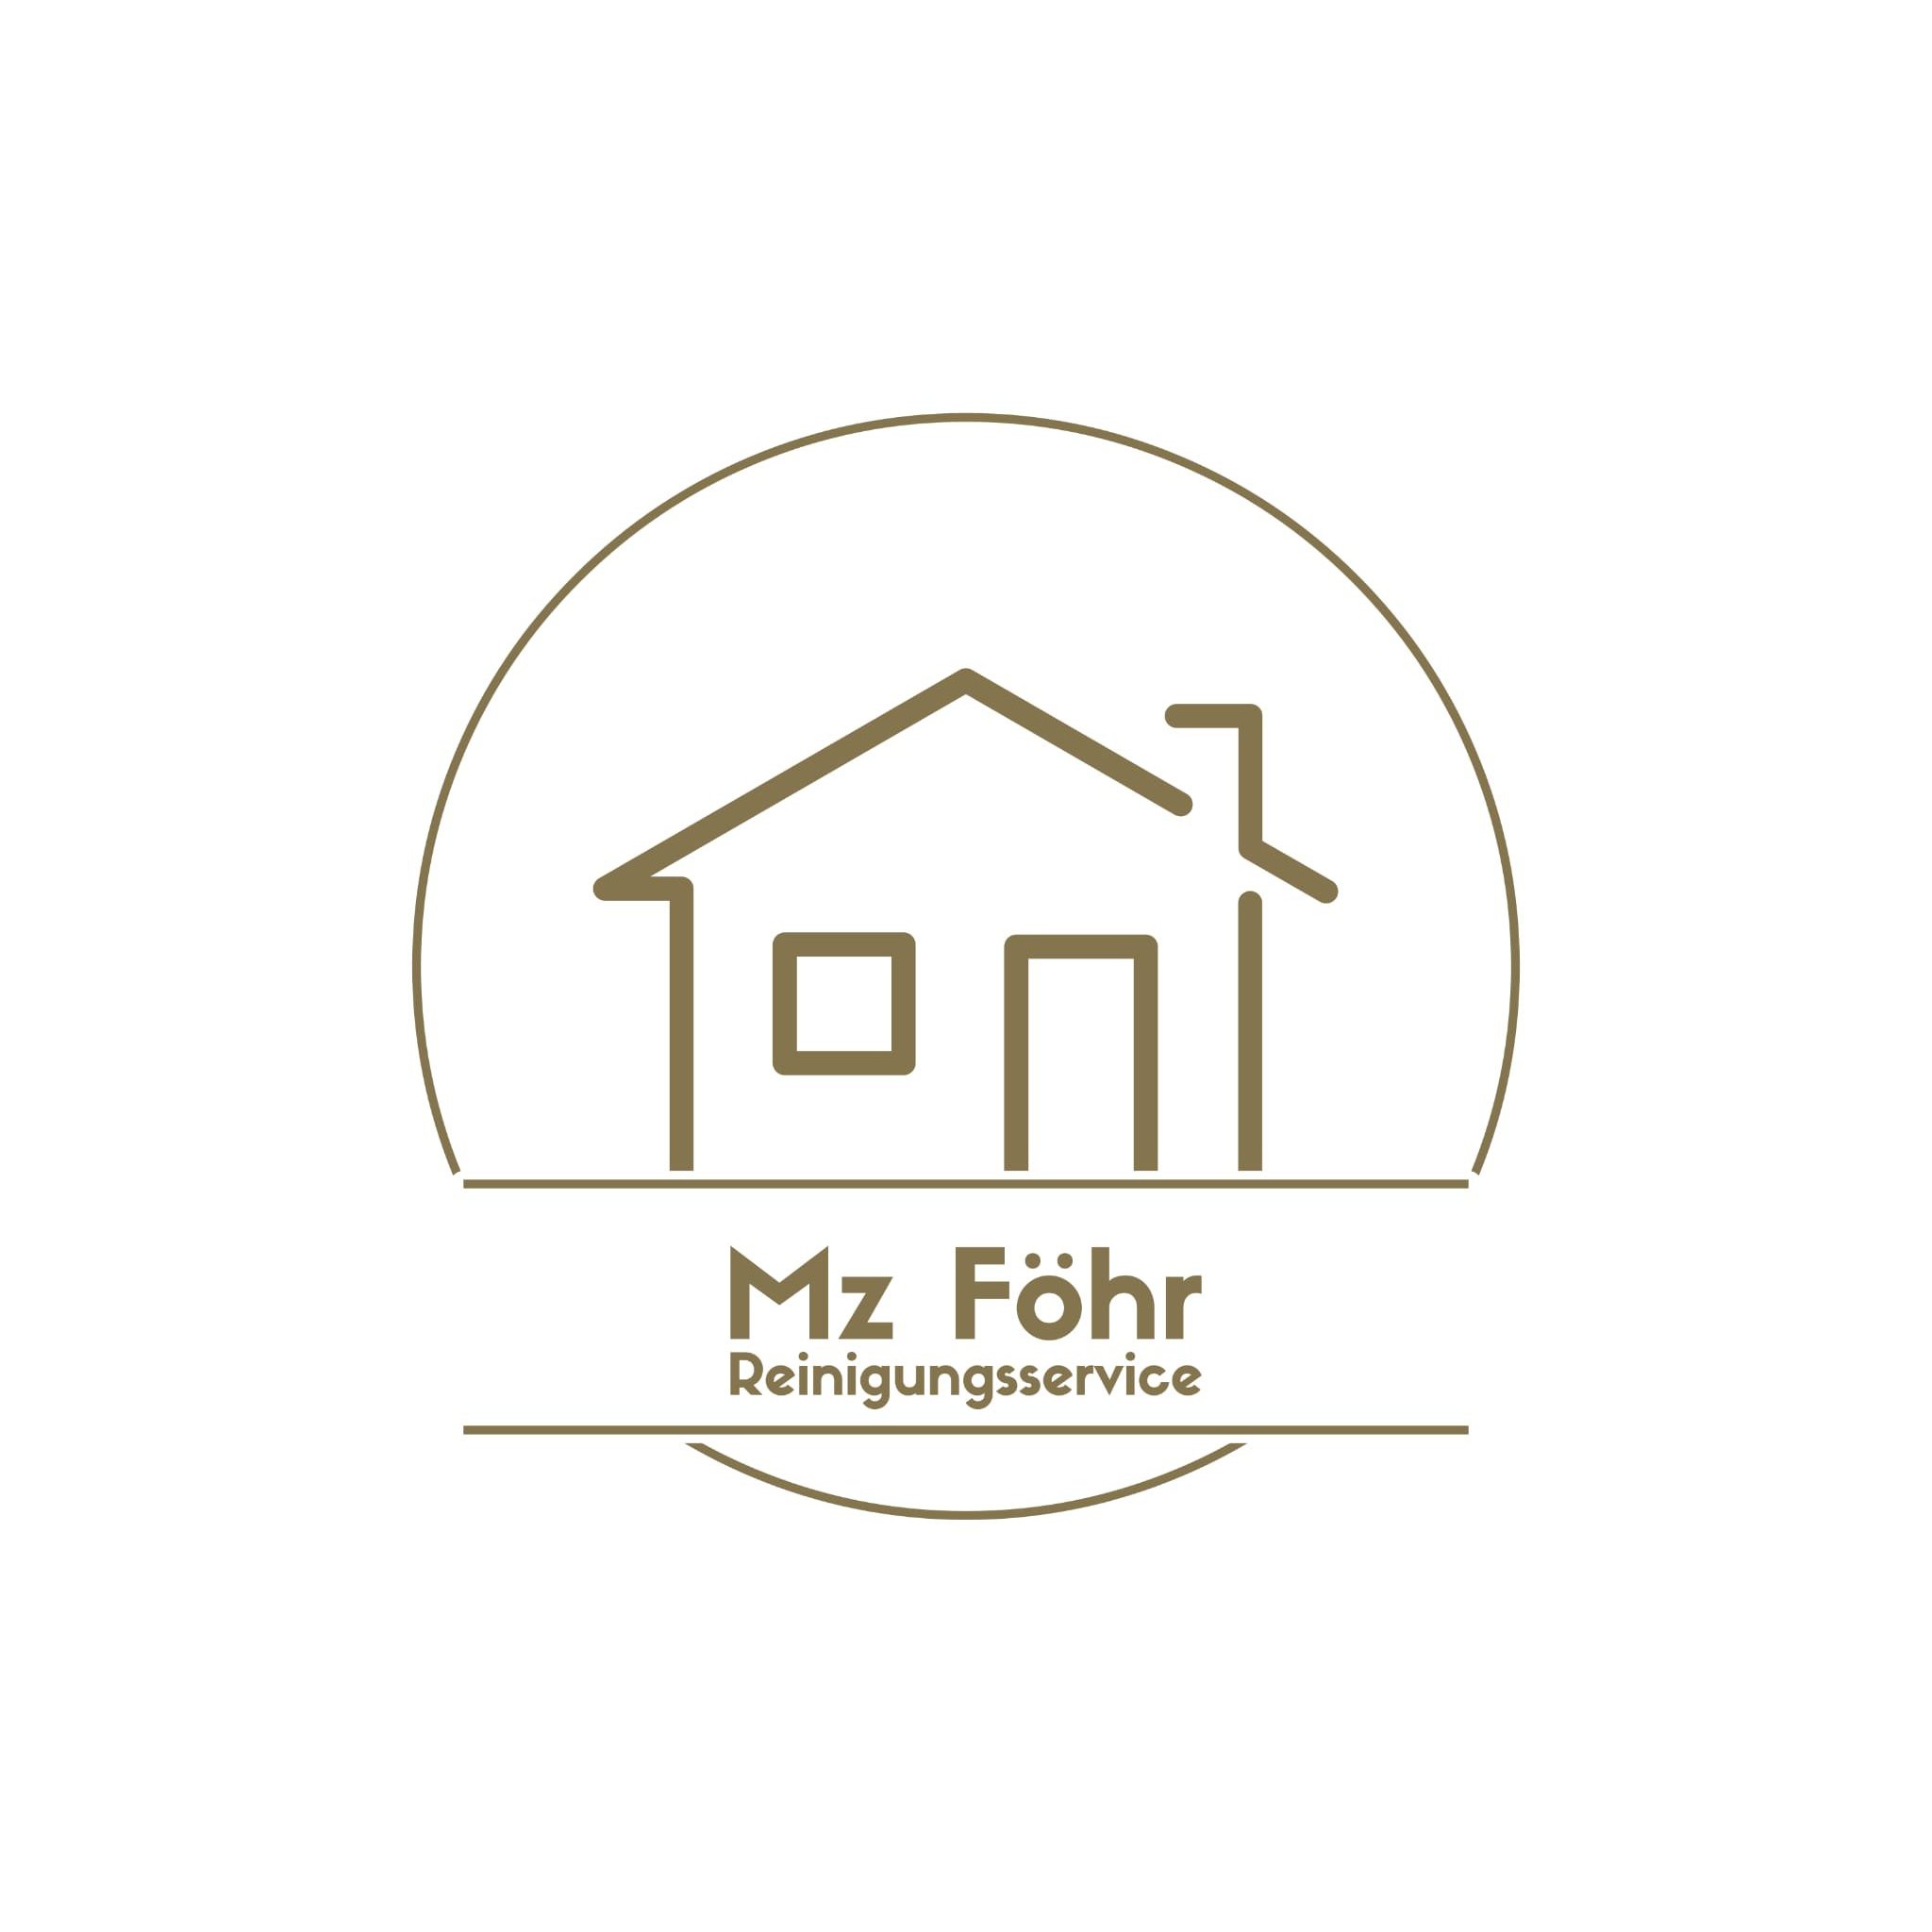 Logo MZ Föhr Reinigungsservice